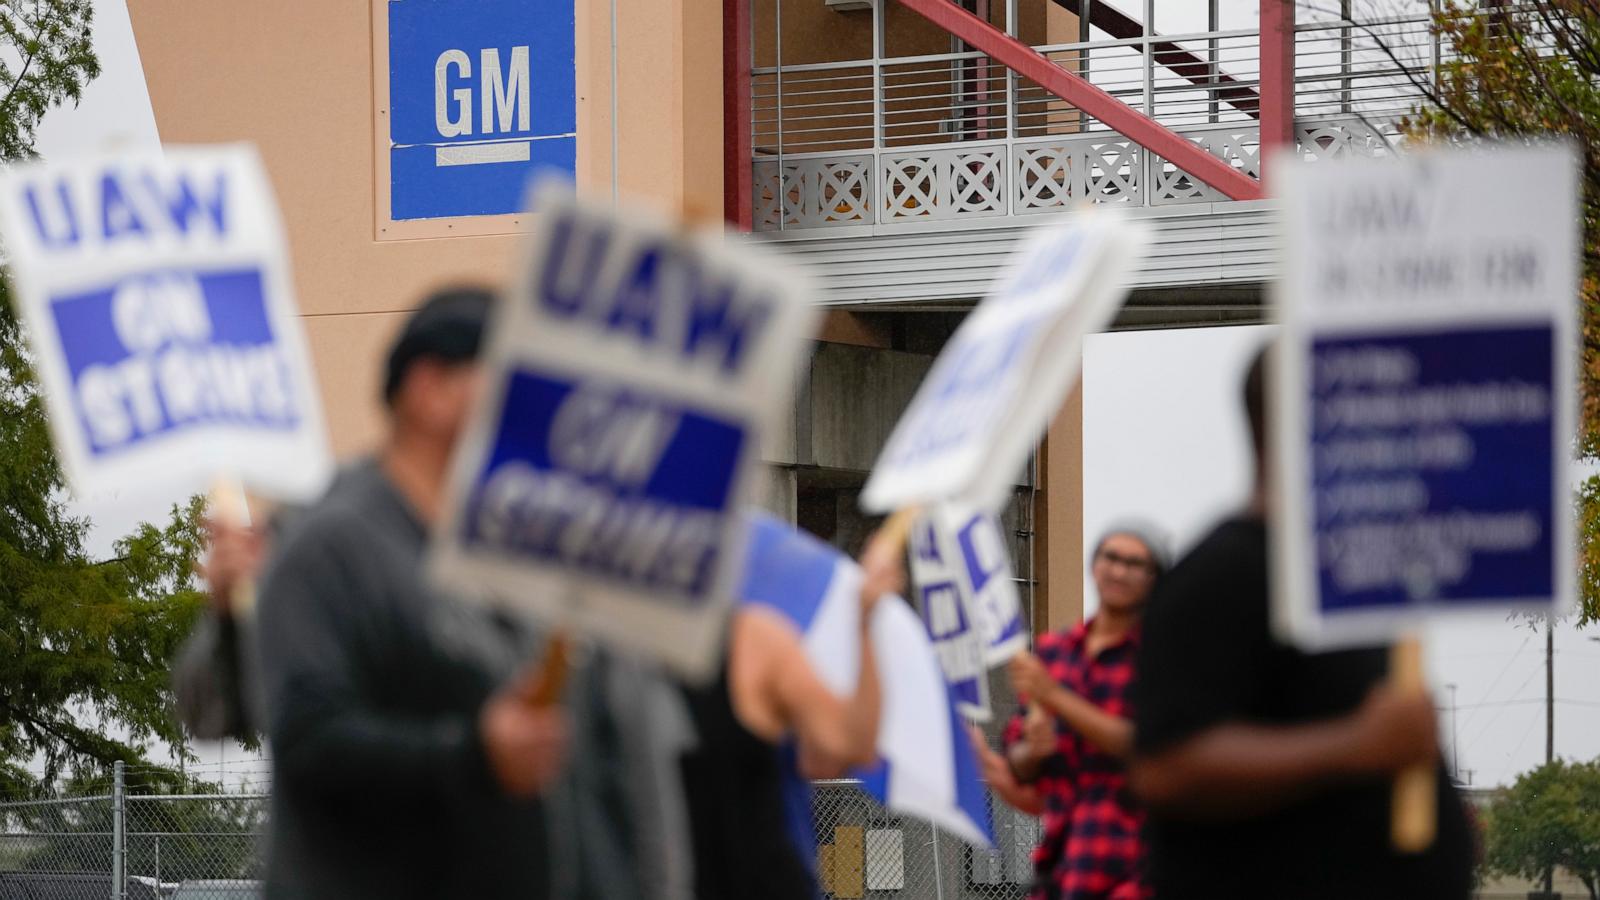 General Motors (GM), History, Deals, & Facts